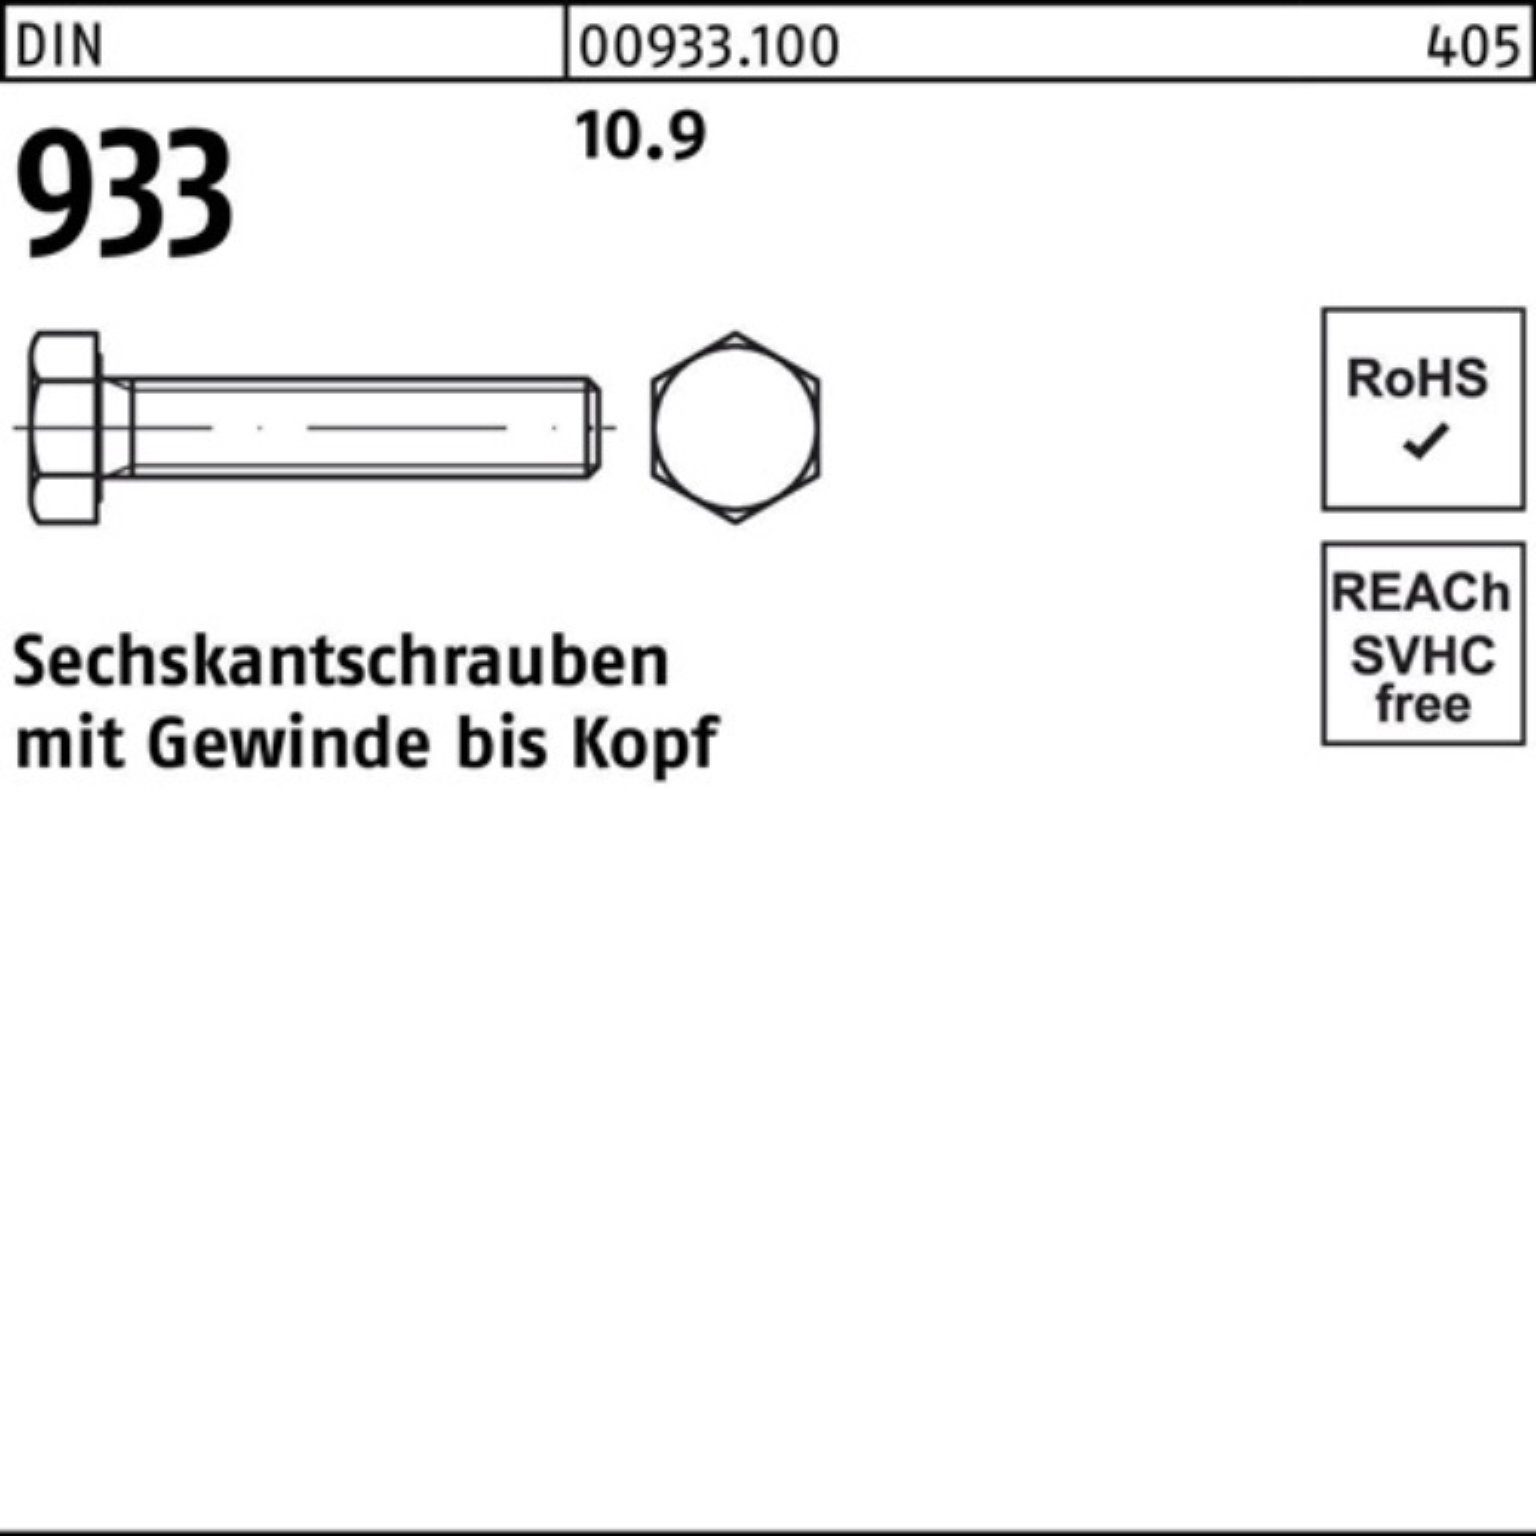 Reyher Sechskantschraube 100er DIN Pack VG 10.9 DIN M16x Sechskantschraube 933 25 130 93 Stück